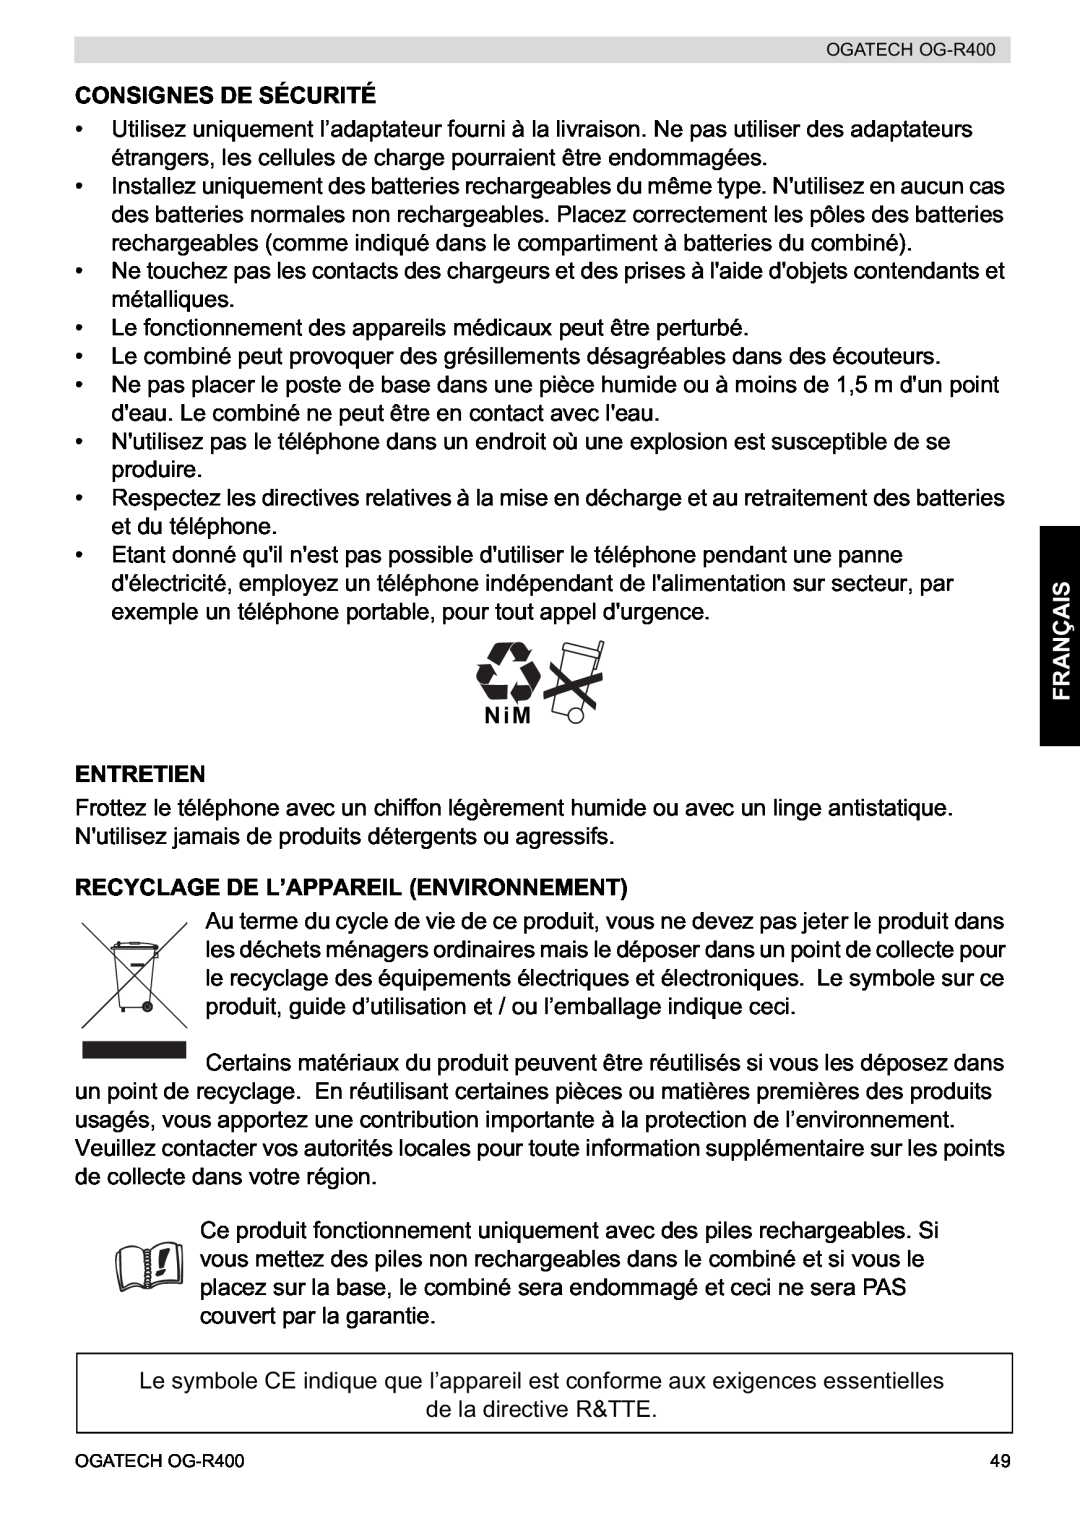 Topcom OG-R400 manual Consignes De Sécurité, NiM ENTRETIEN, Recyclage De L’Appareil Environnement, Français 